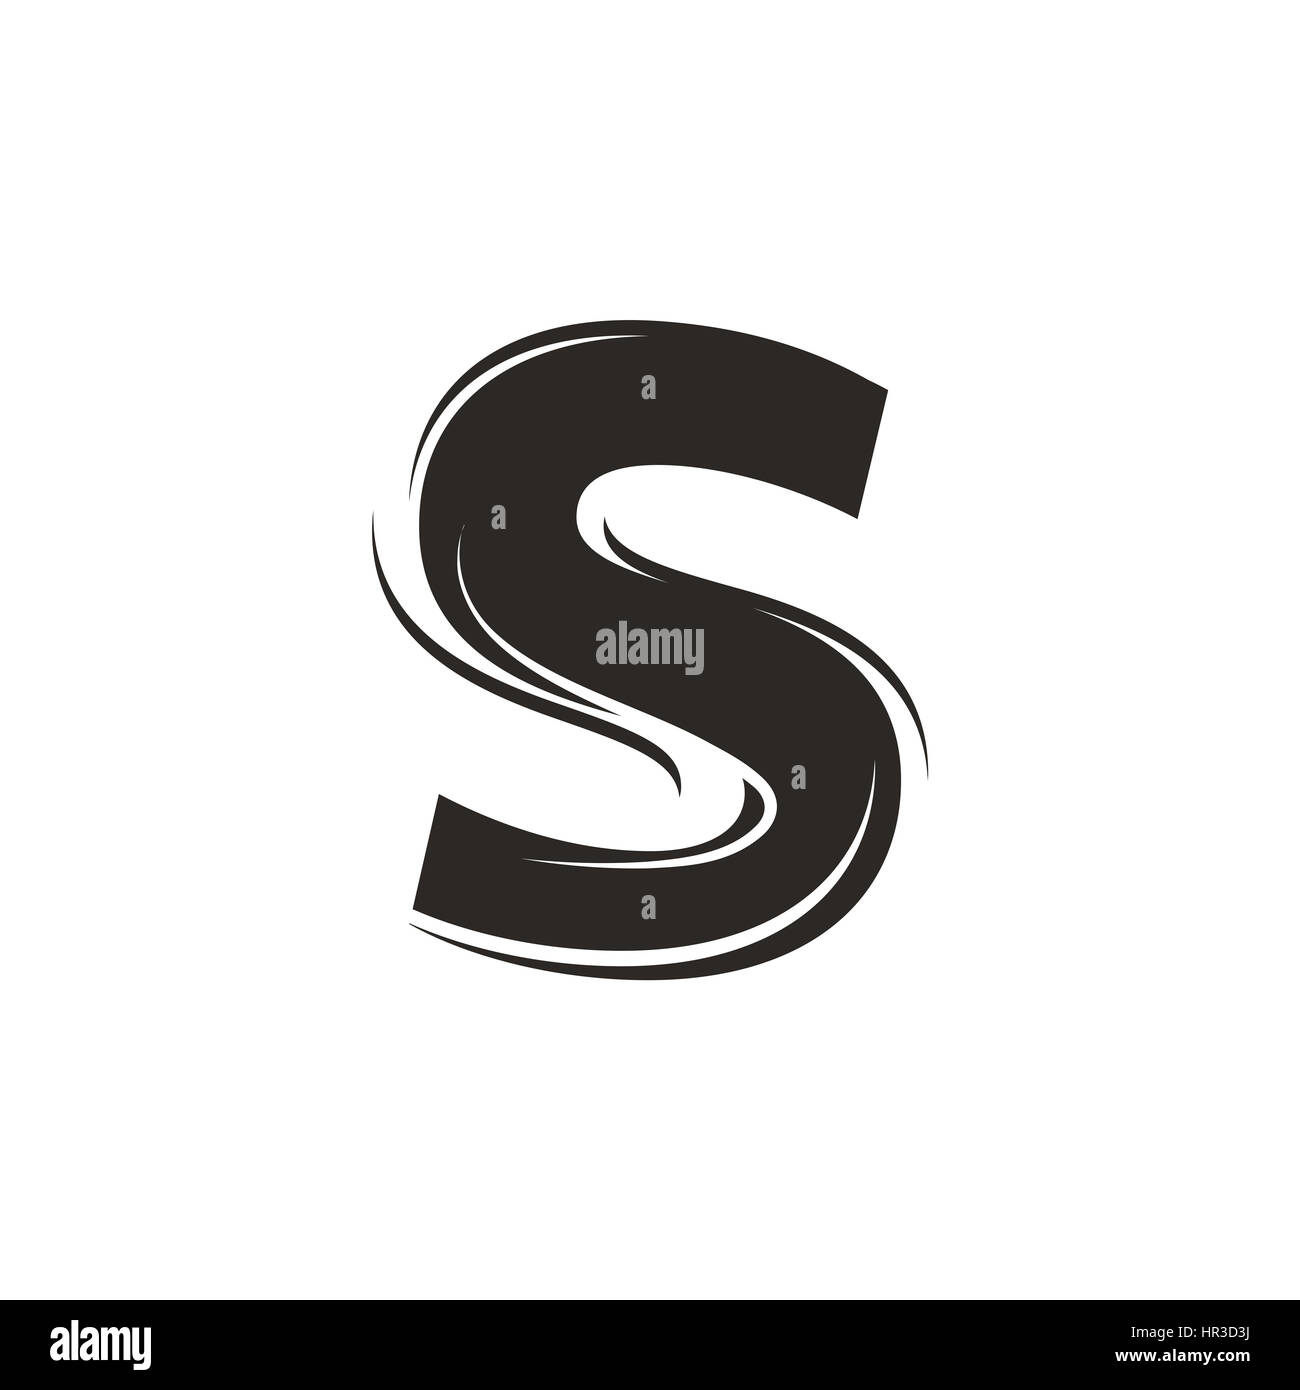 Stilvolle Darstellung der Buchstaben S gemischt mit Haaren, die für ein Logo oder als isolierte grafisches Element verwendet werden kann Stockfoto